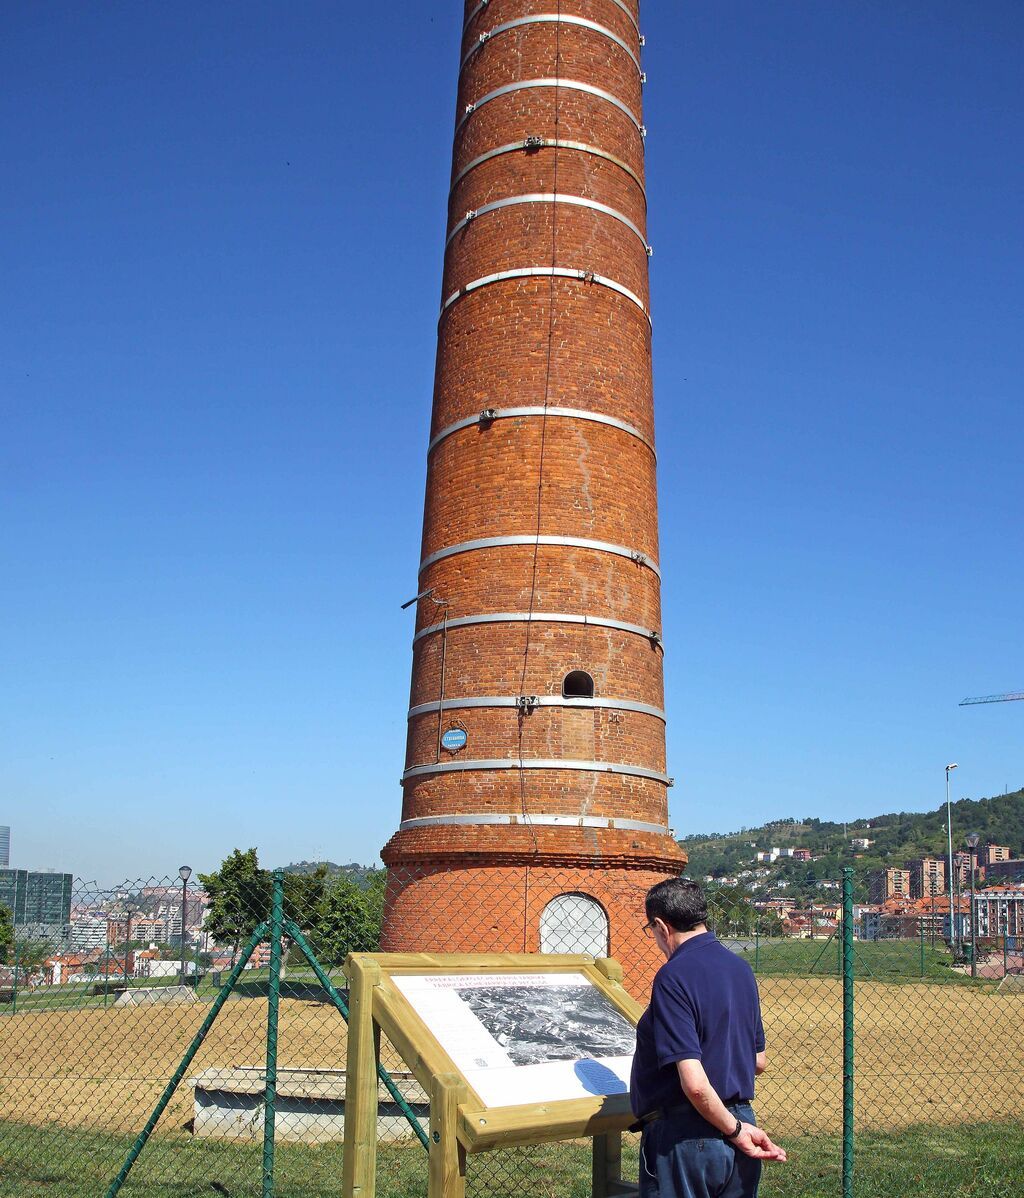 La chimenea es testigo del pasado industrial de Bilbao.